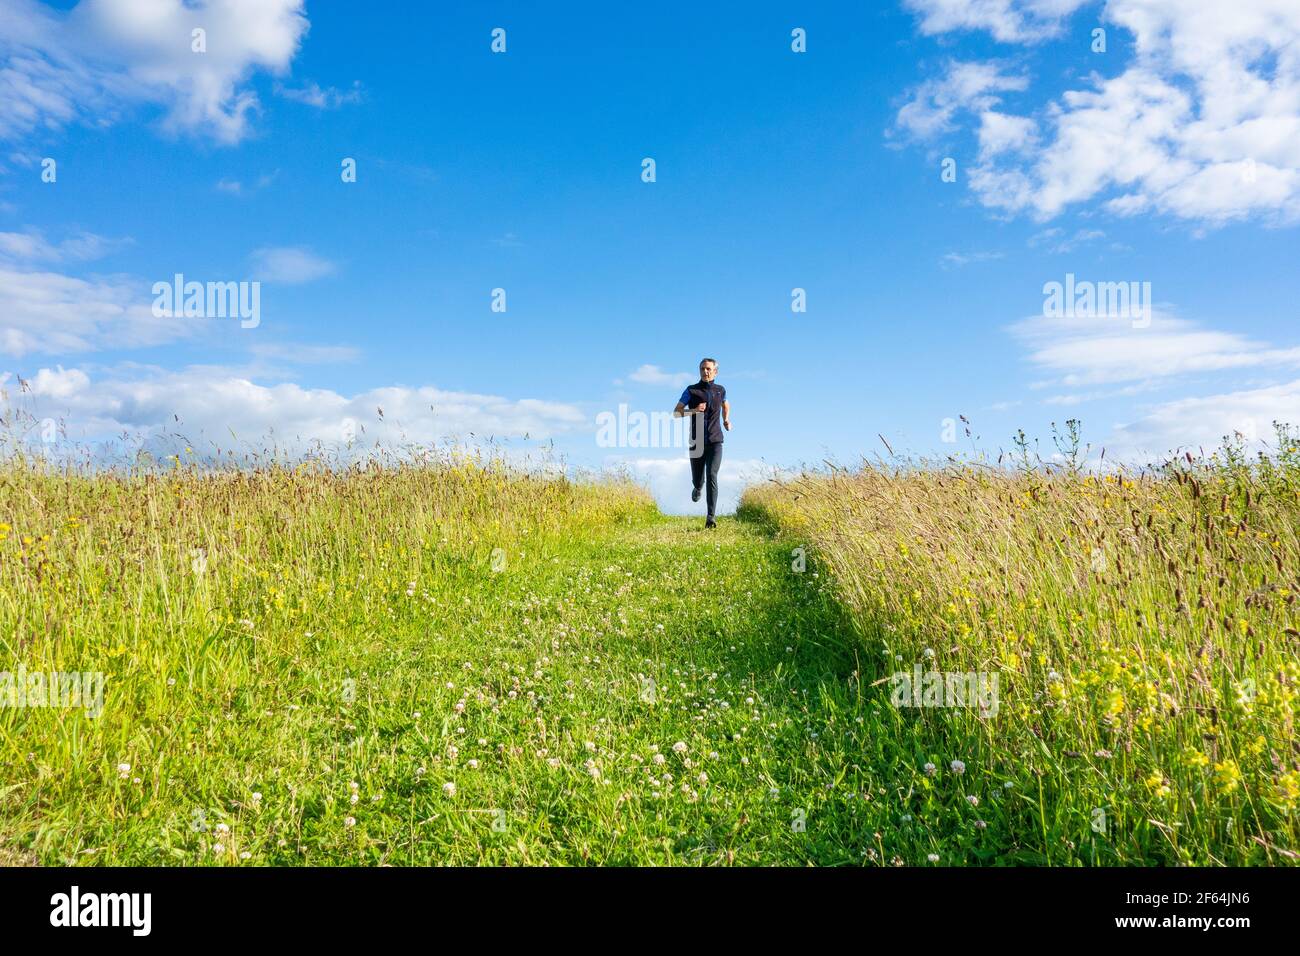 Homme mûr qui court, qui descend sur une piste de marche en herbe sur une colline en campagne. ROYAUME-UNI Banque D'Images